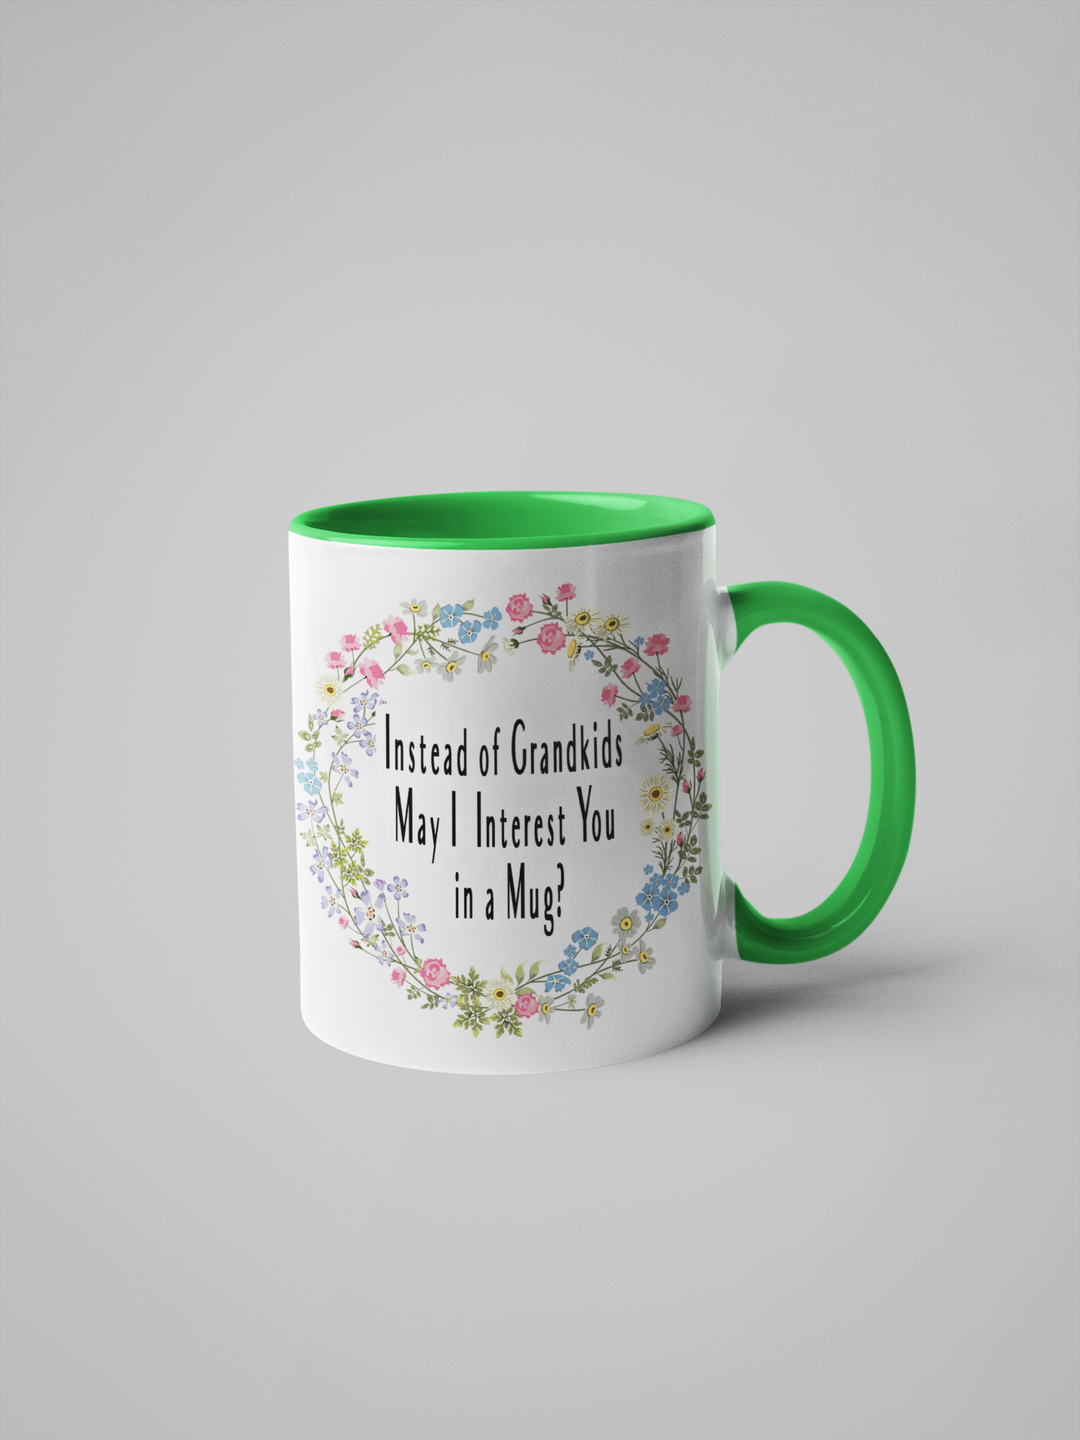 Instead of Grandkids May I Interest You in a Mug? Coffee Mug: White/Green / 11oz.